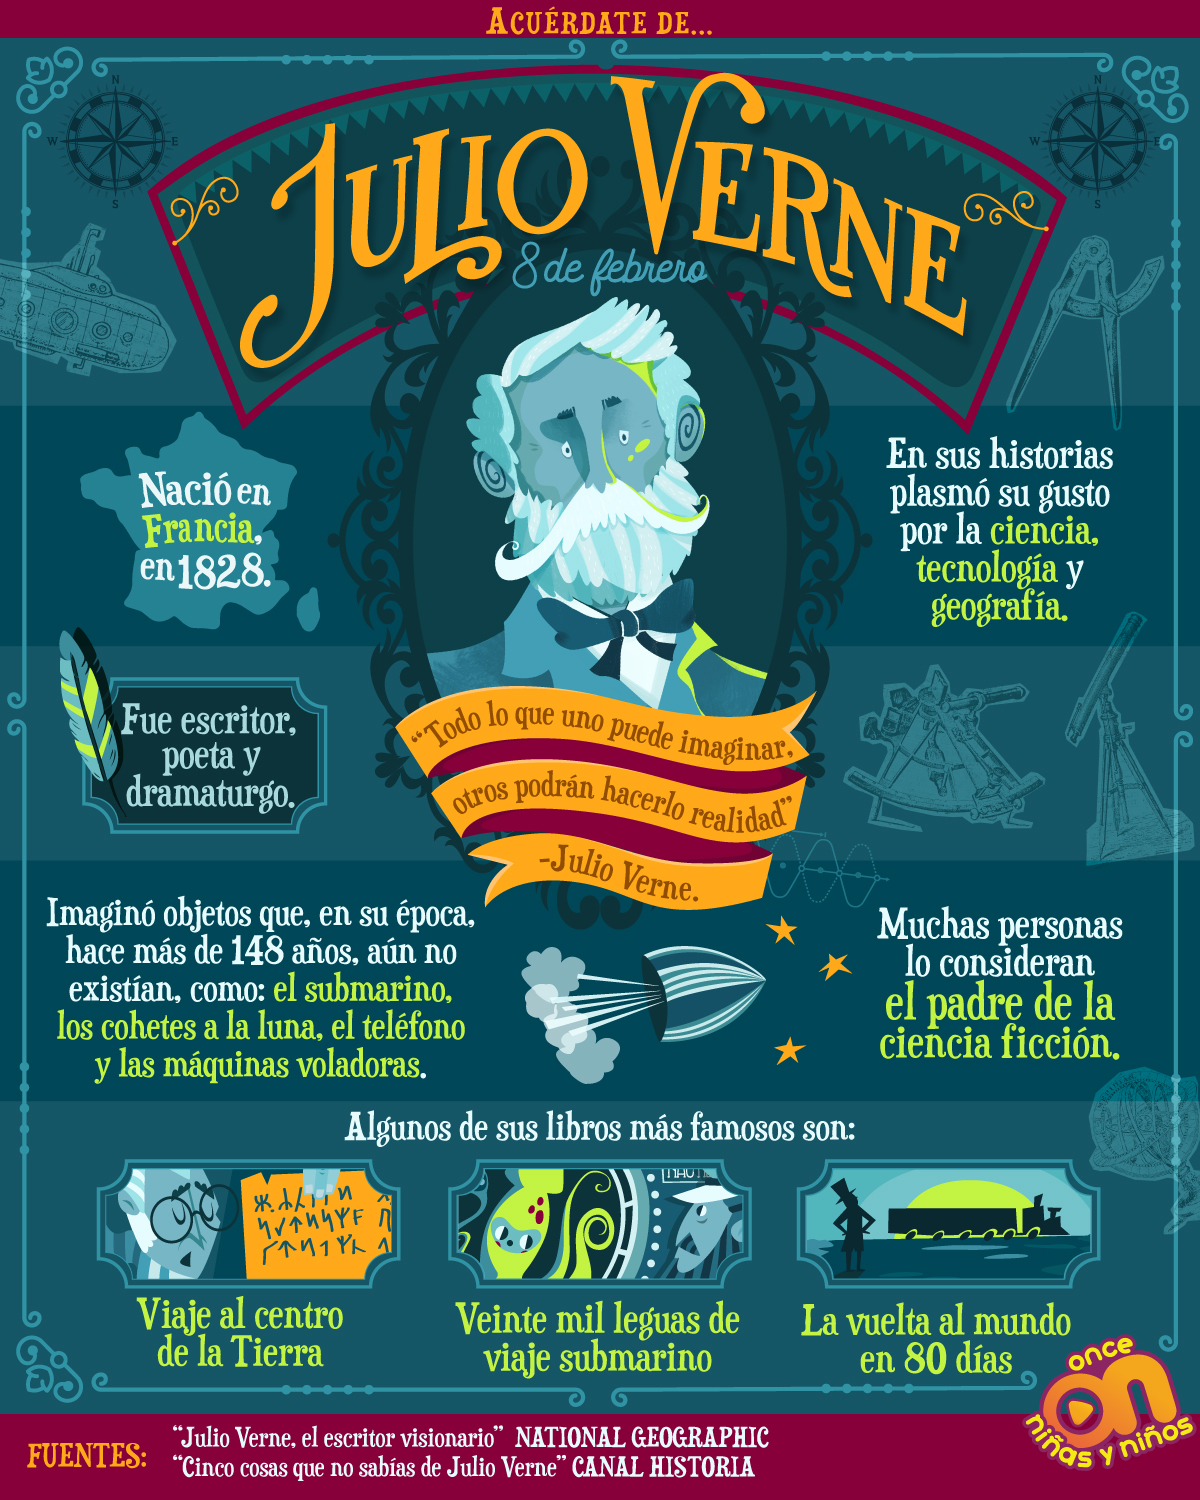 Julio Verne
8 de febrero 
Once Niñas y Niños 